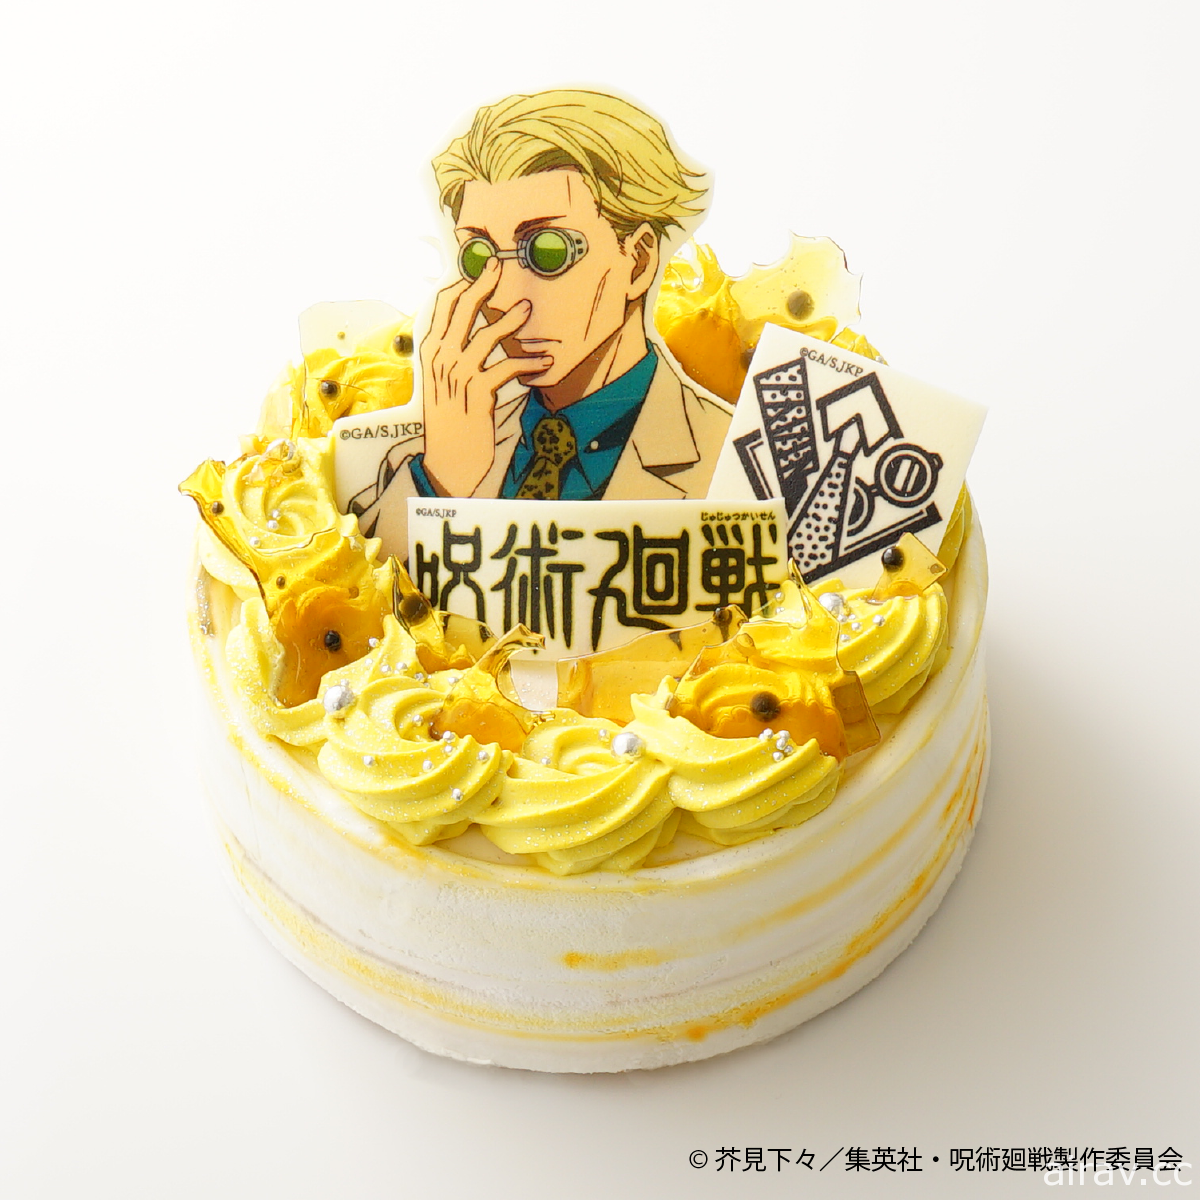 《咒術迴戰》×Cake.jp 推出「五条悟」與「七海建人」款式蛋糕